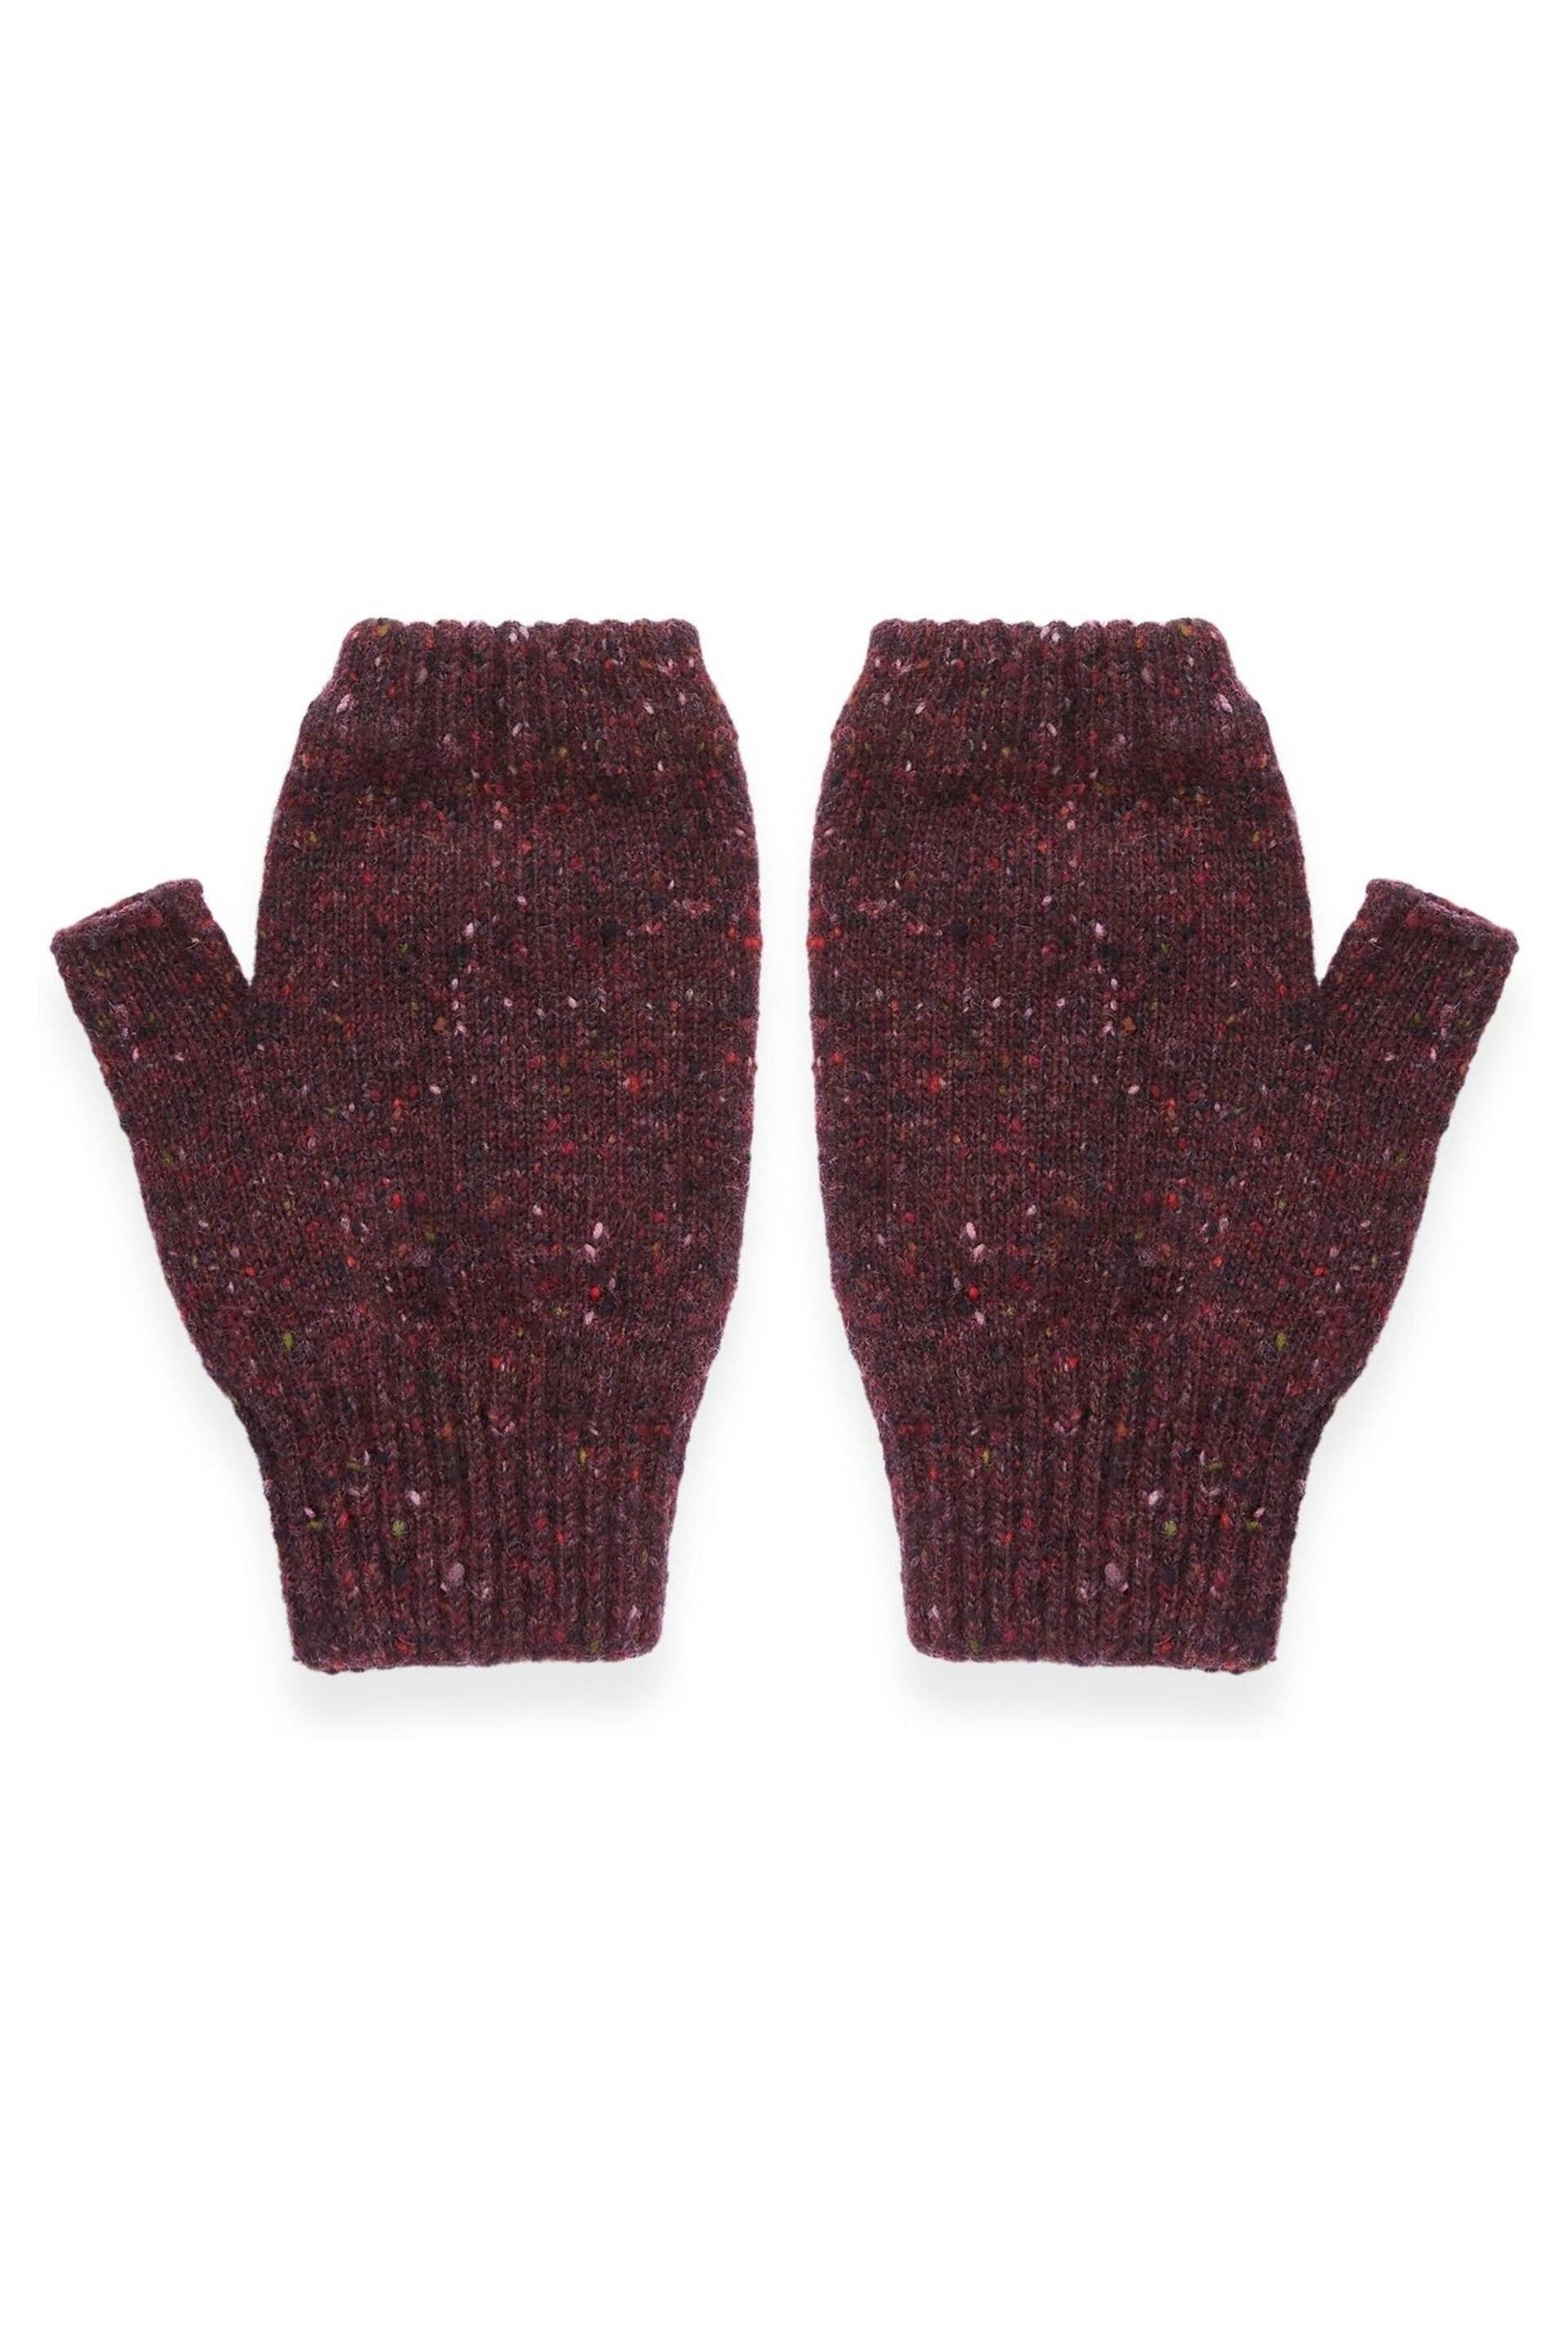 Celtic & Co. Purple Donegal Fingerless Mitt Gloves - Image 1 of 4